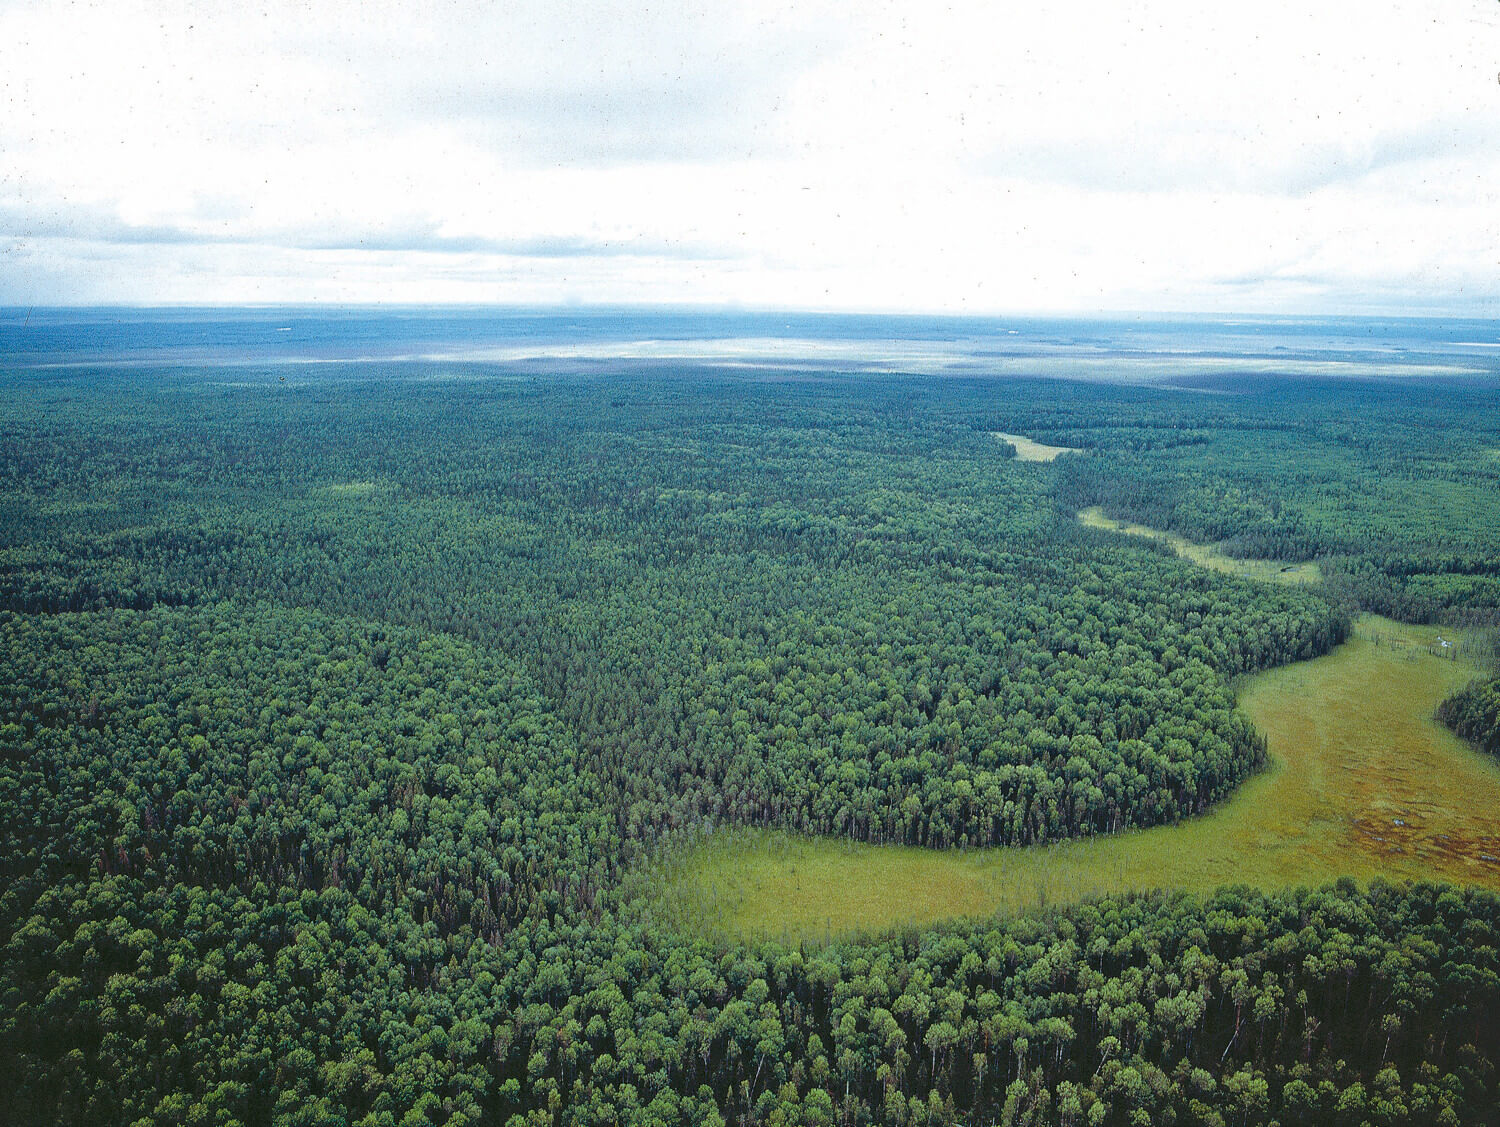 I det inre av Ryssland fungerar fortfarande taigaskogens naturliga branddynamik. De ljusgröna partierna i bilden domineras av lövträd, vilket indikerar att skogen brunnit för inte så länge sedan. I de mörkare gröna områdena är marken fuktig. Elden har inte kommit åt där vilket gör att de domineras av gran.